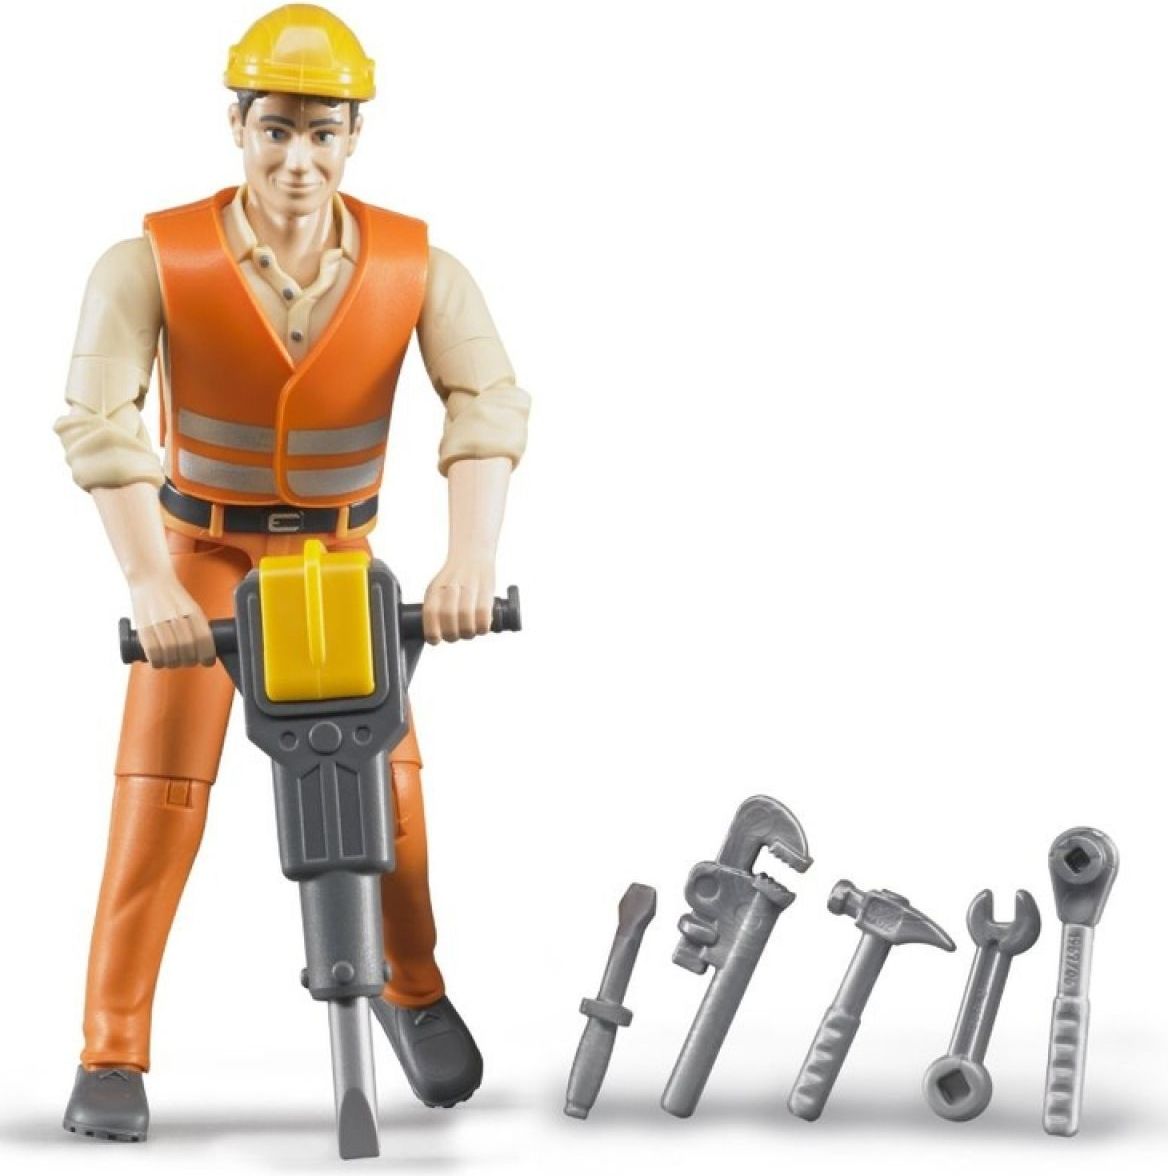 Bruder 60020 Figurka stavební dělník s příslušenstvím - obrázek 1